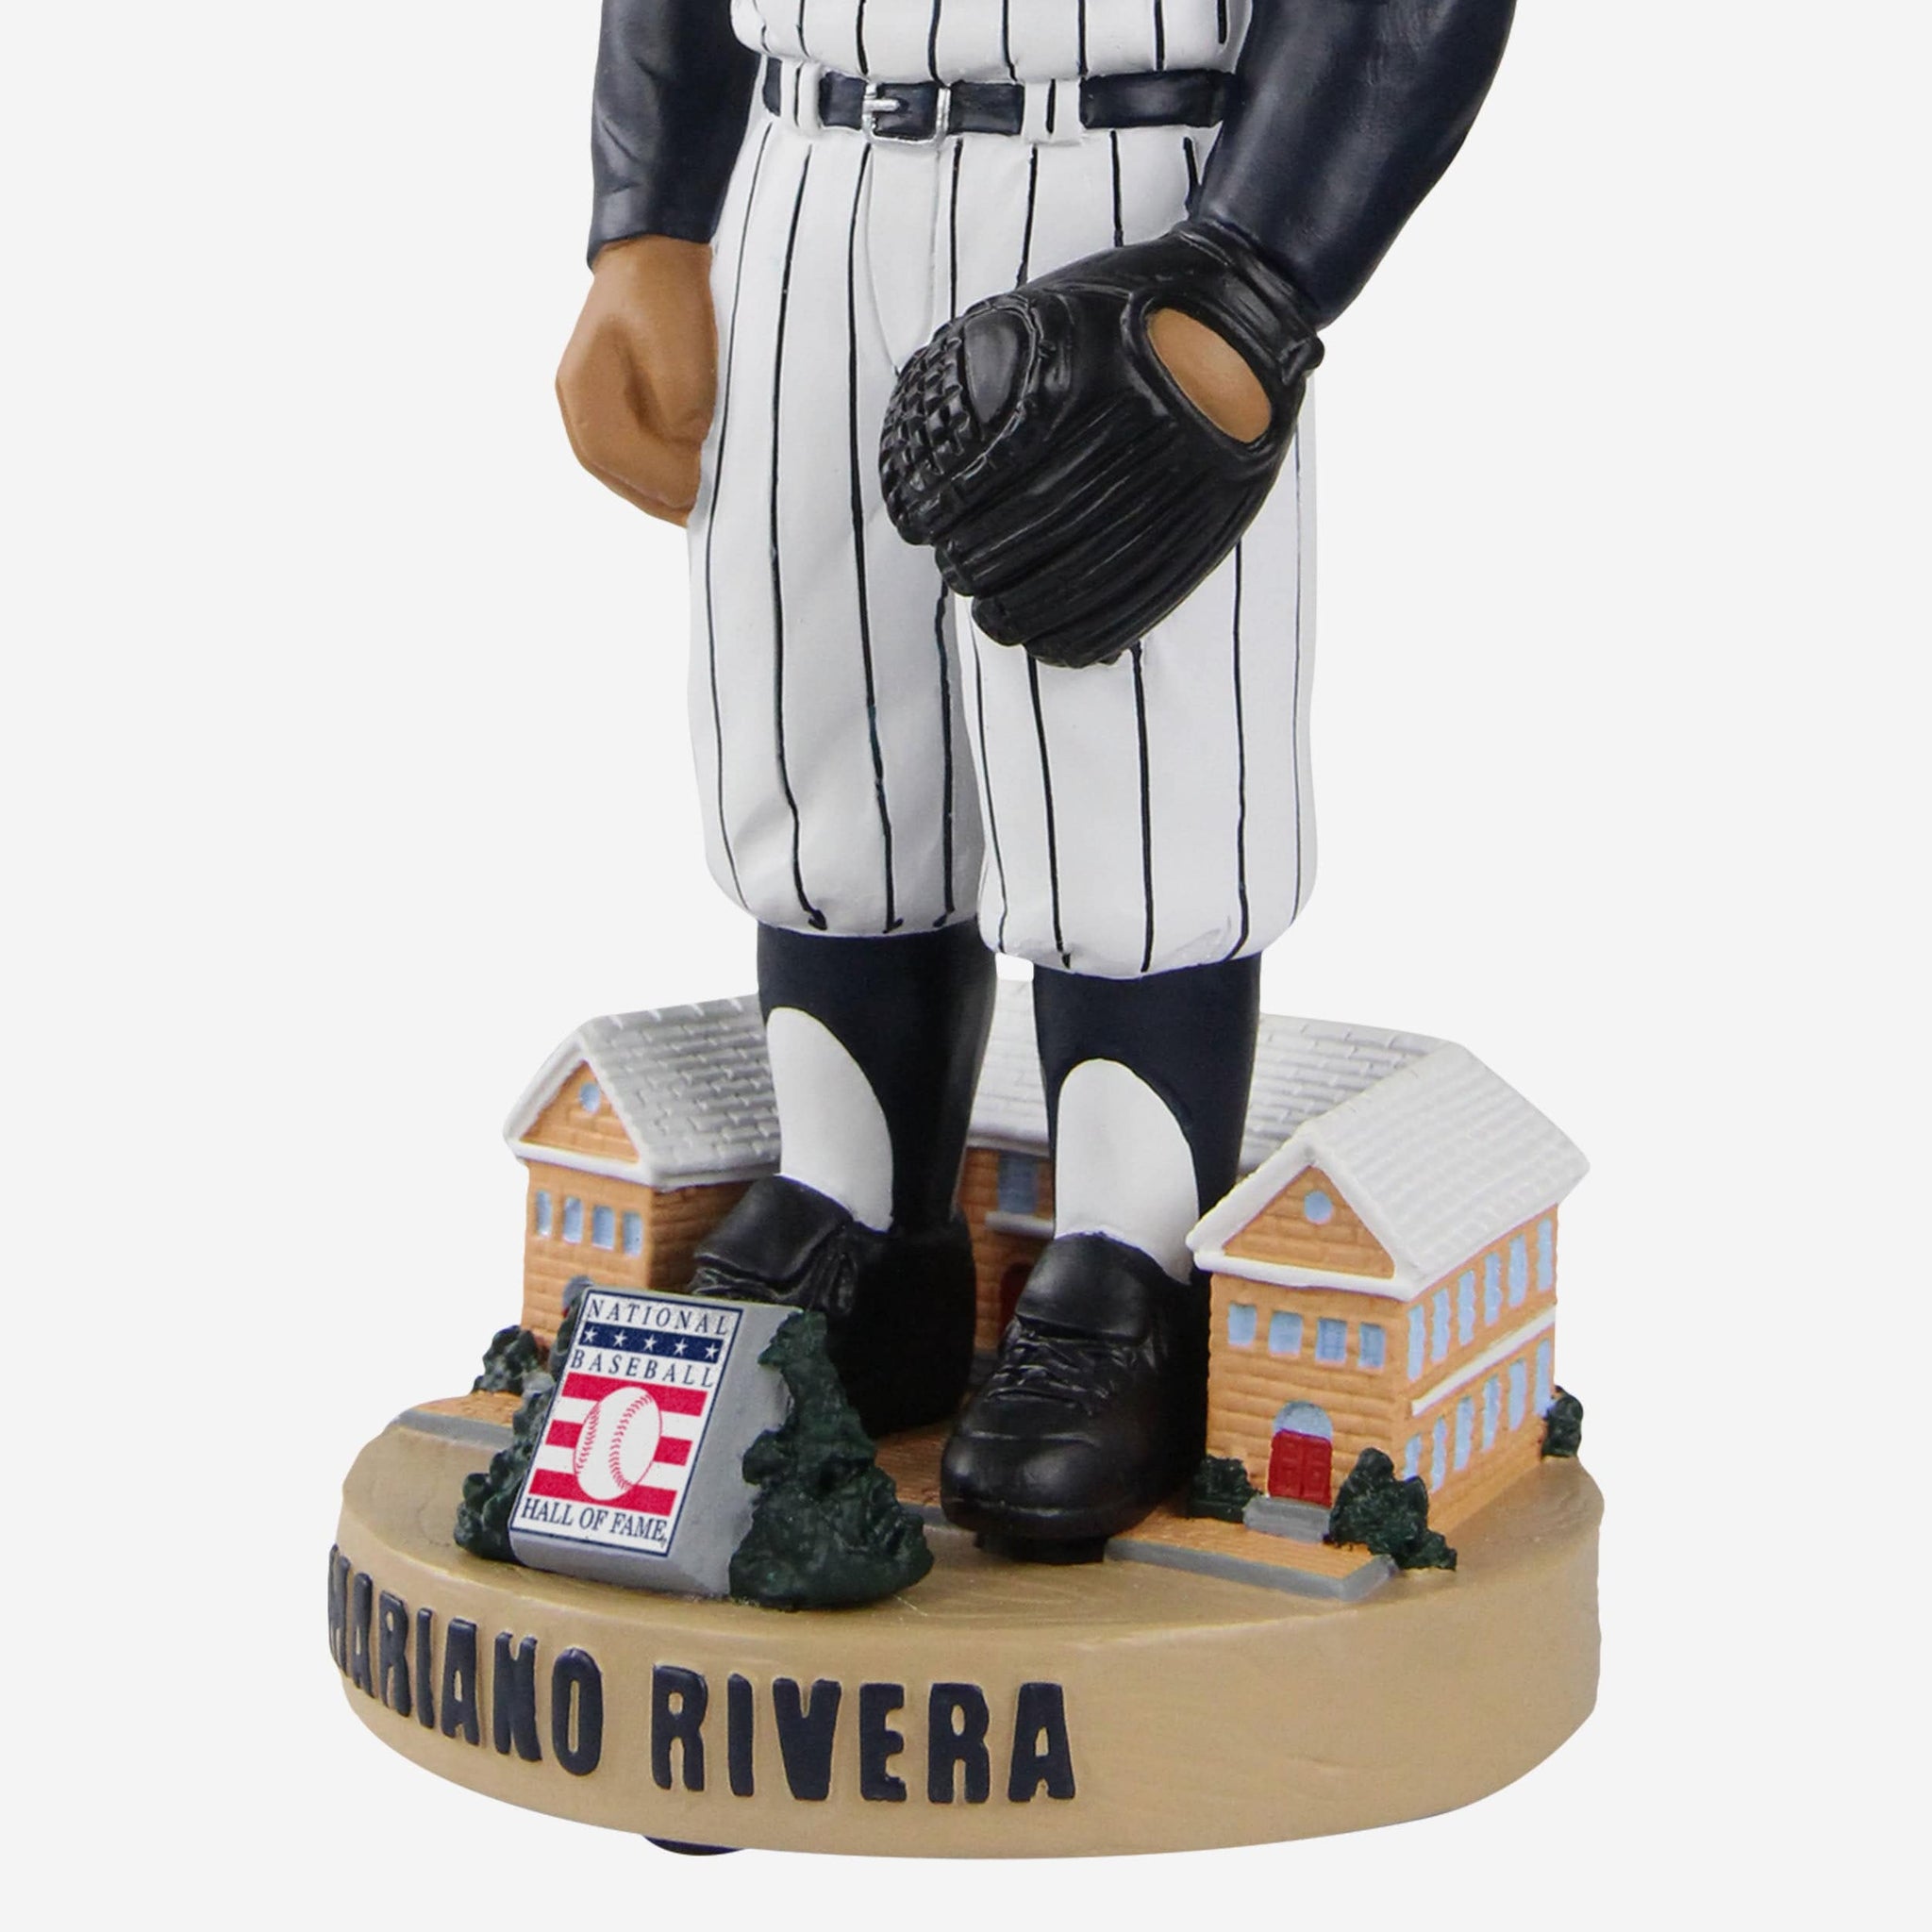 Buy MLB Women's New York Yankees Mariano Rivera White/Navy